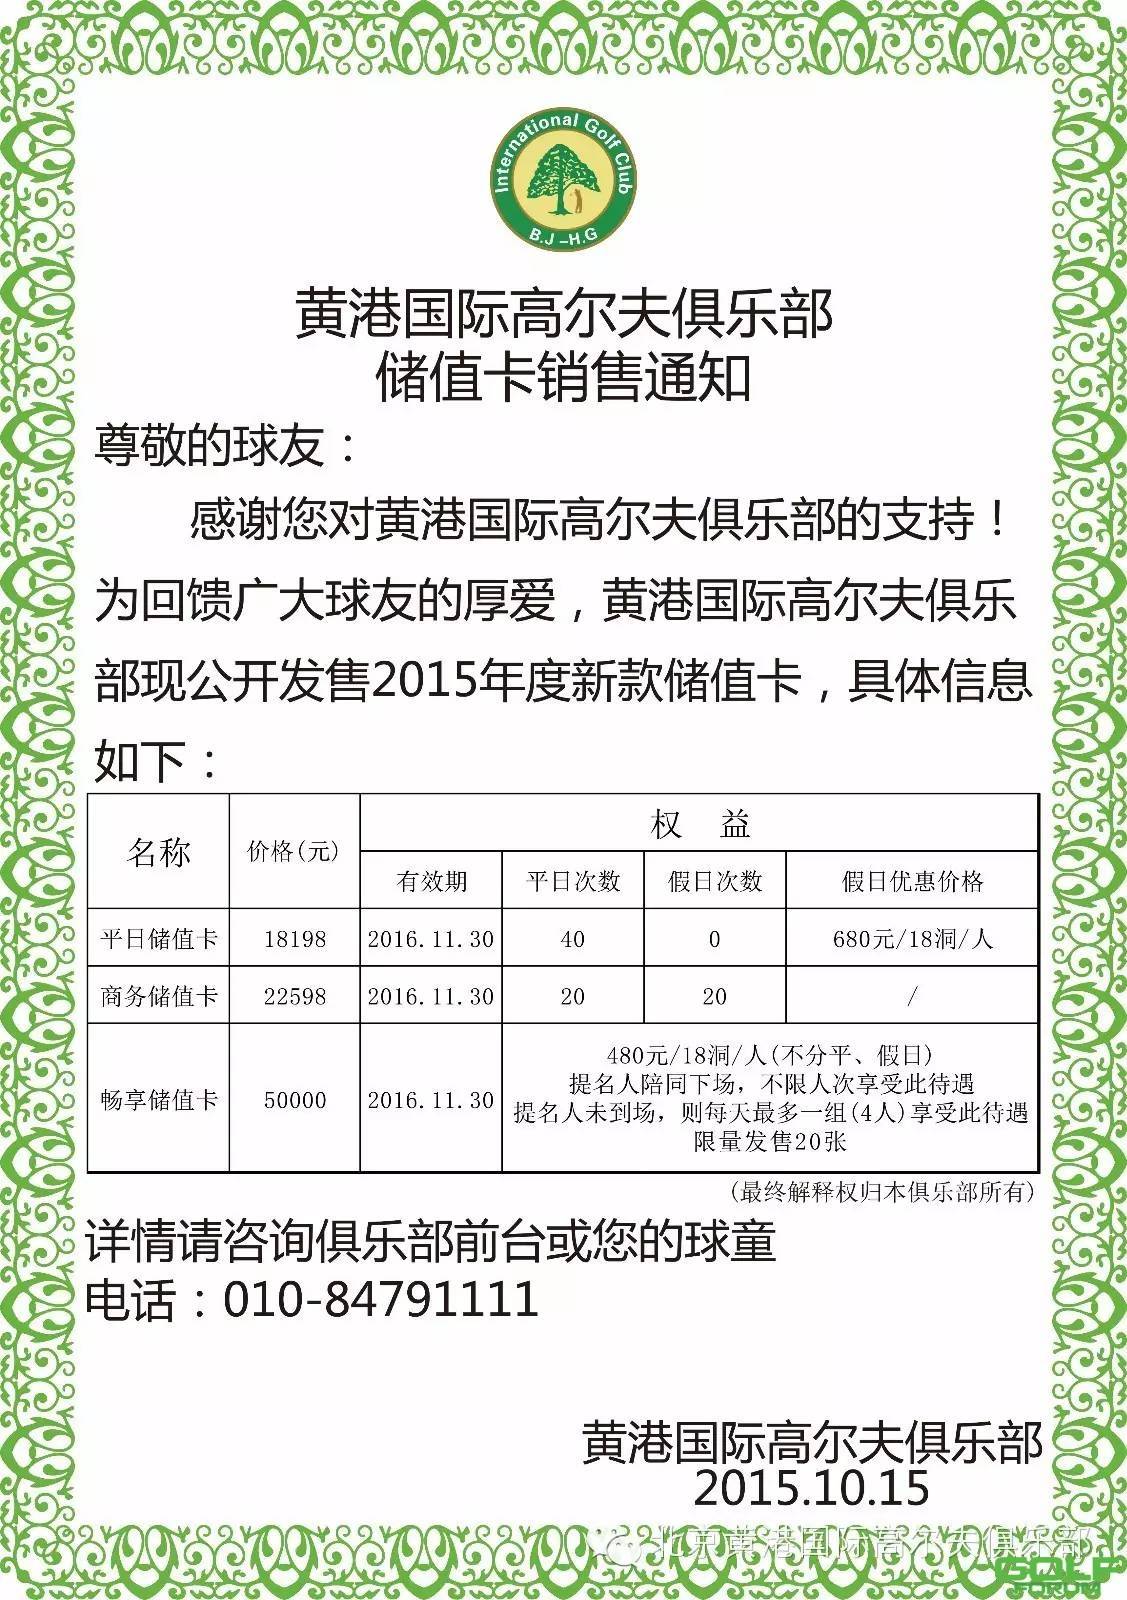 黄港国际高尔夫俱乐部2015年储值卡限量发售